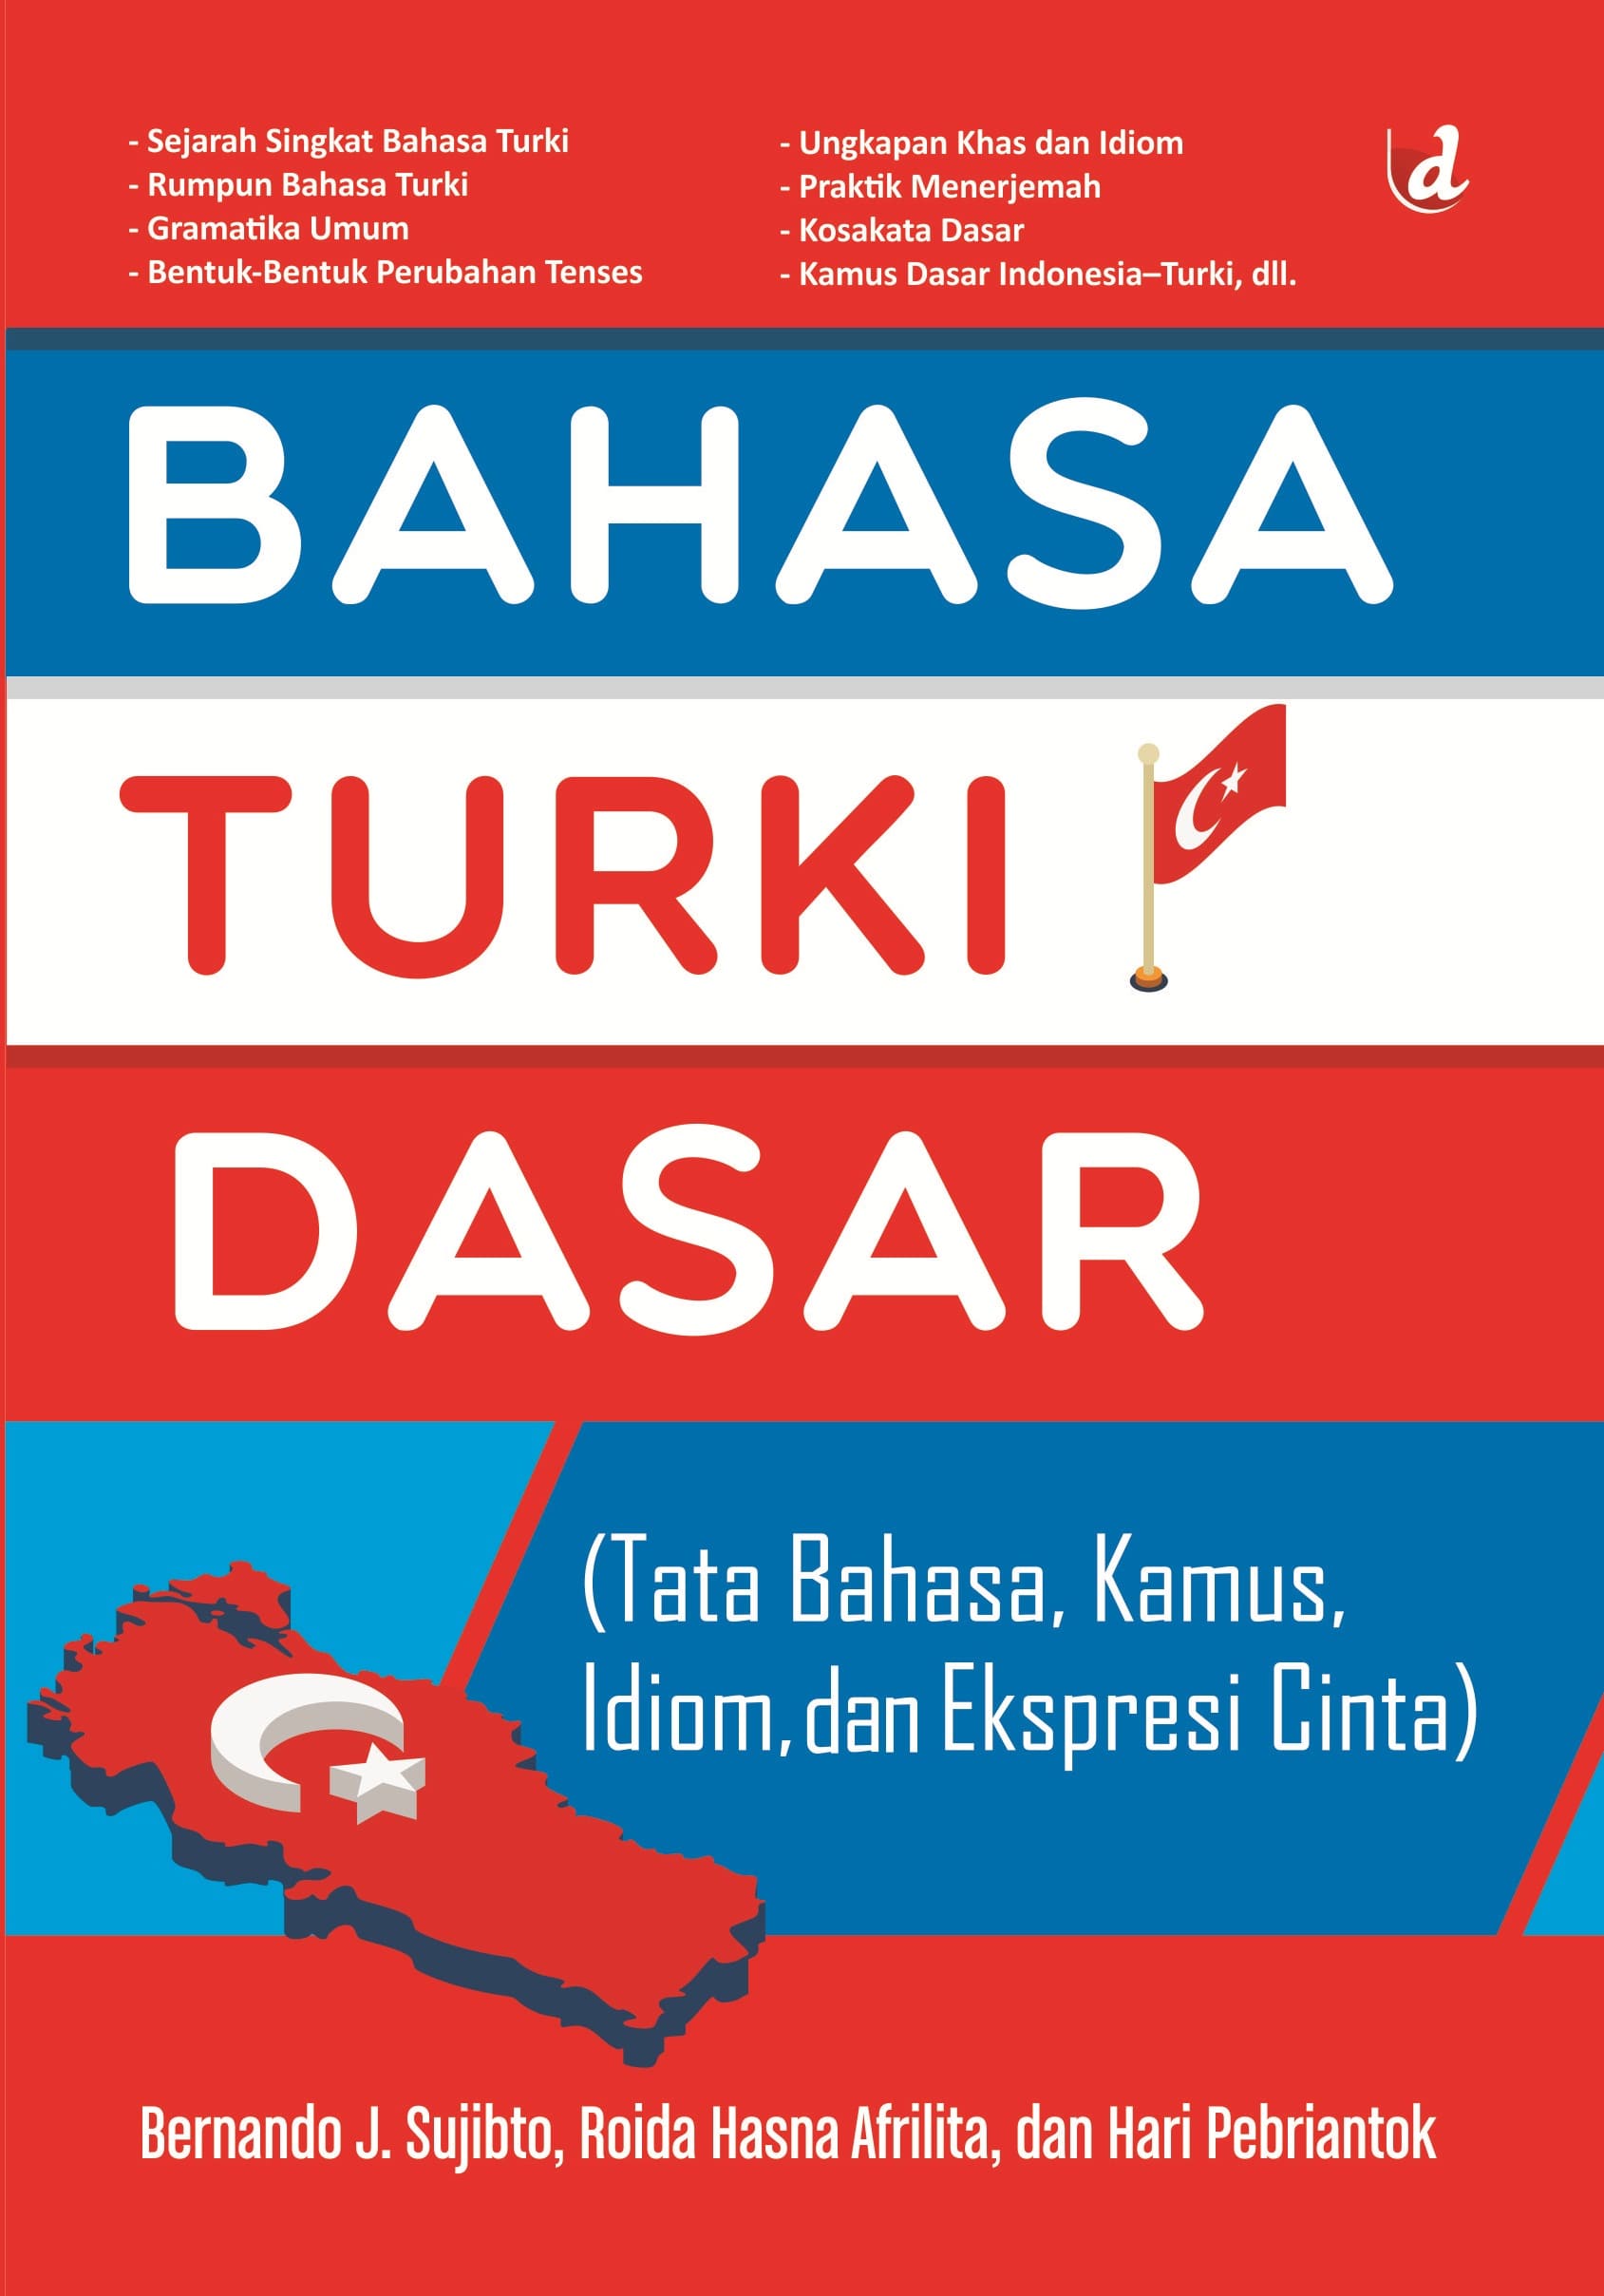 Bahasa Turki dasar